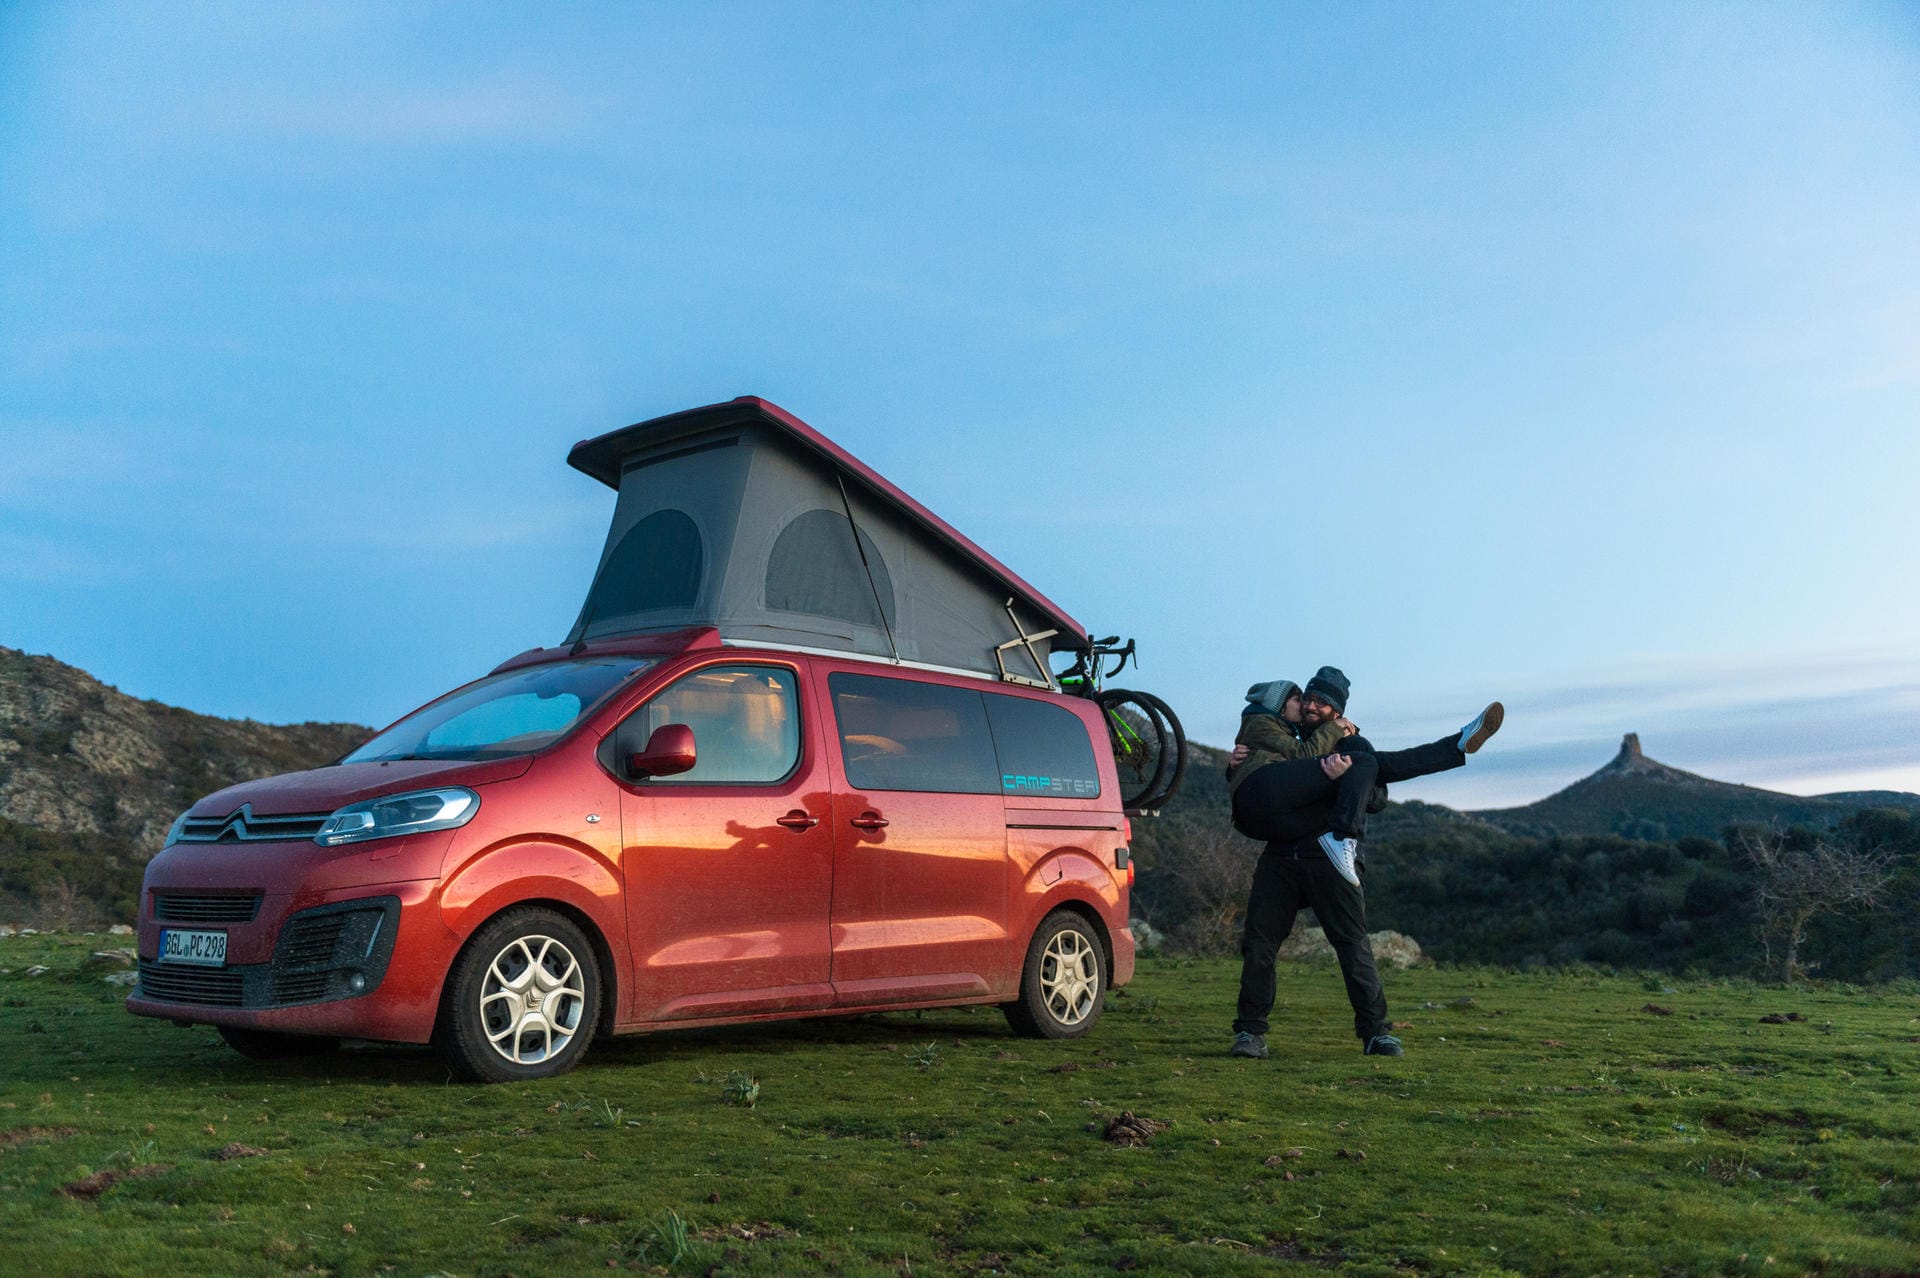 Erweiterter Freizeitraum: Pössl-Wohnmobil auf Basis des Citroën Spacetourer mit Aufstelldach.